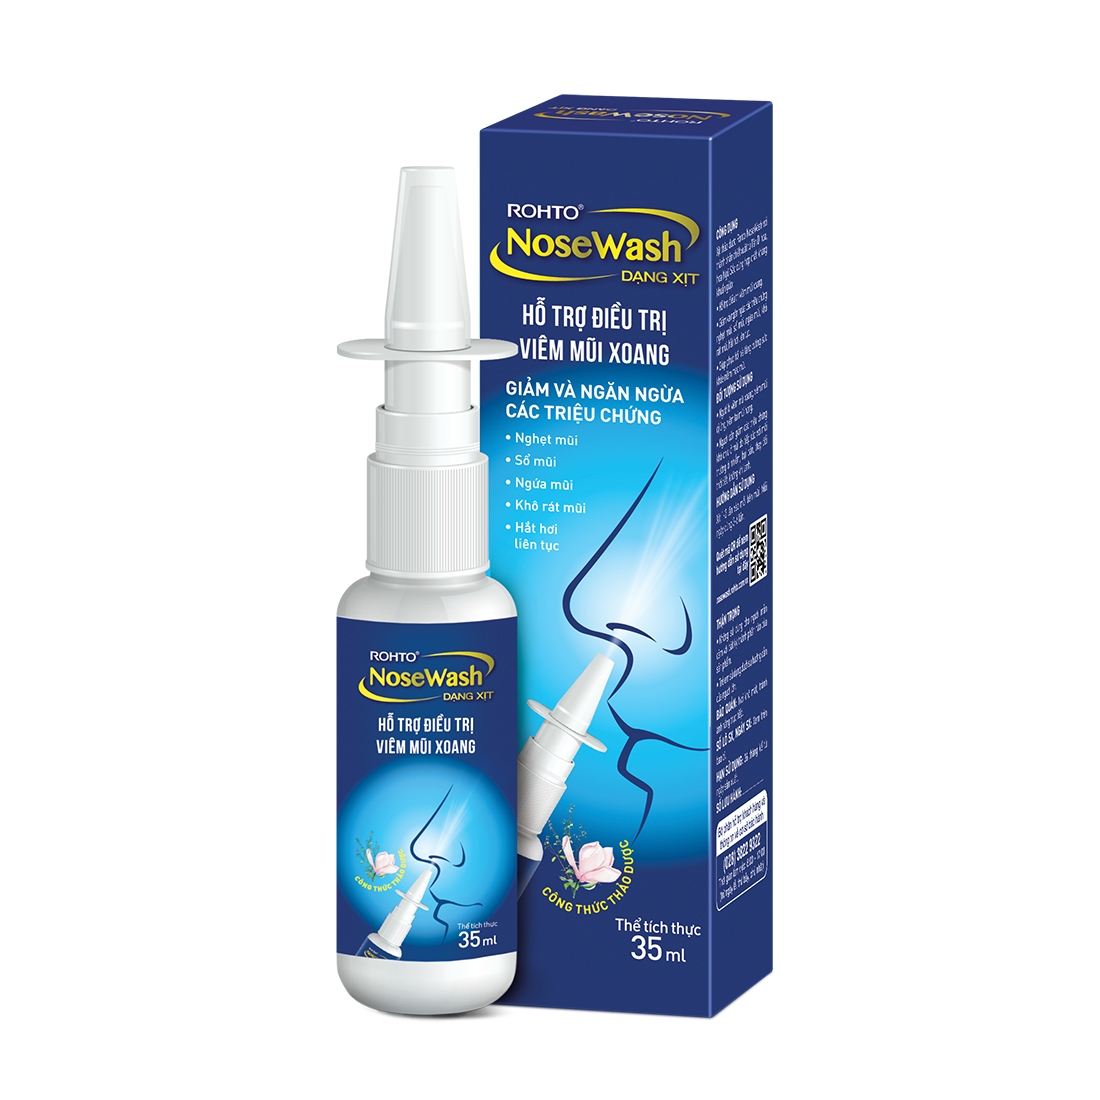 Dung dịch xịt mũi ROHTO NoseWash Spray hỗ trợ điều trị viêm mũi xoang (Chai 35ml)